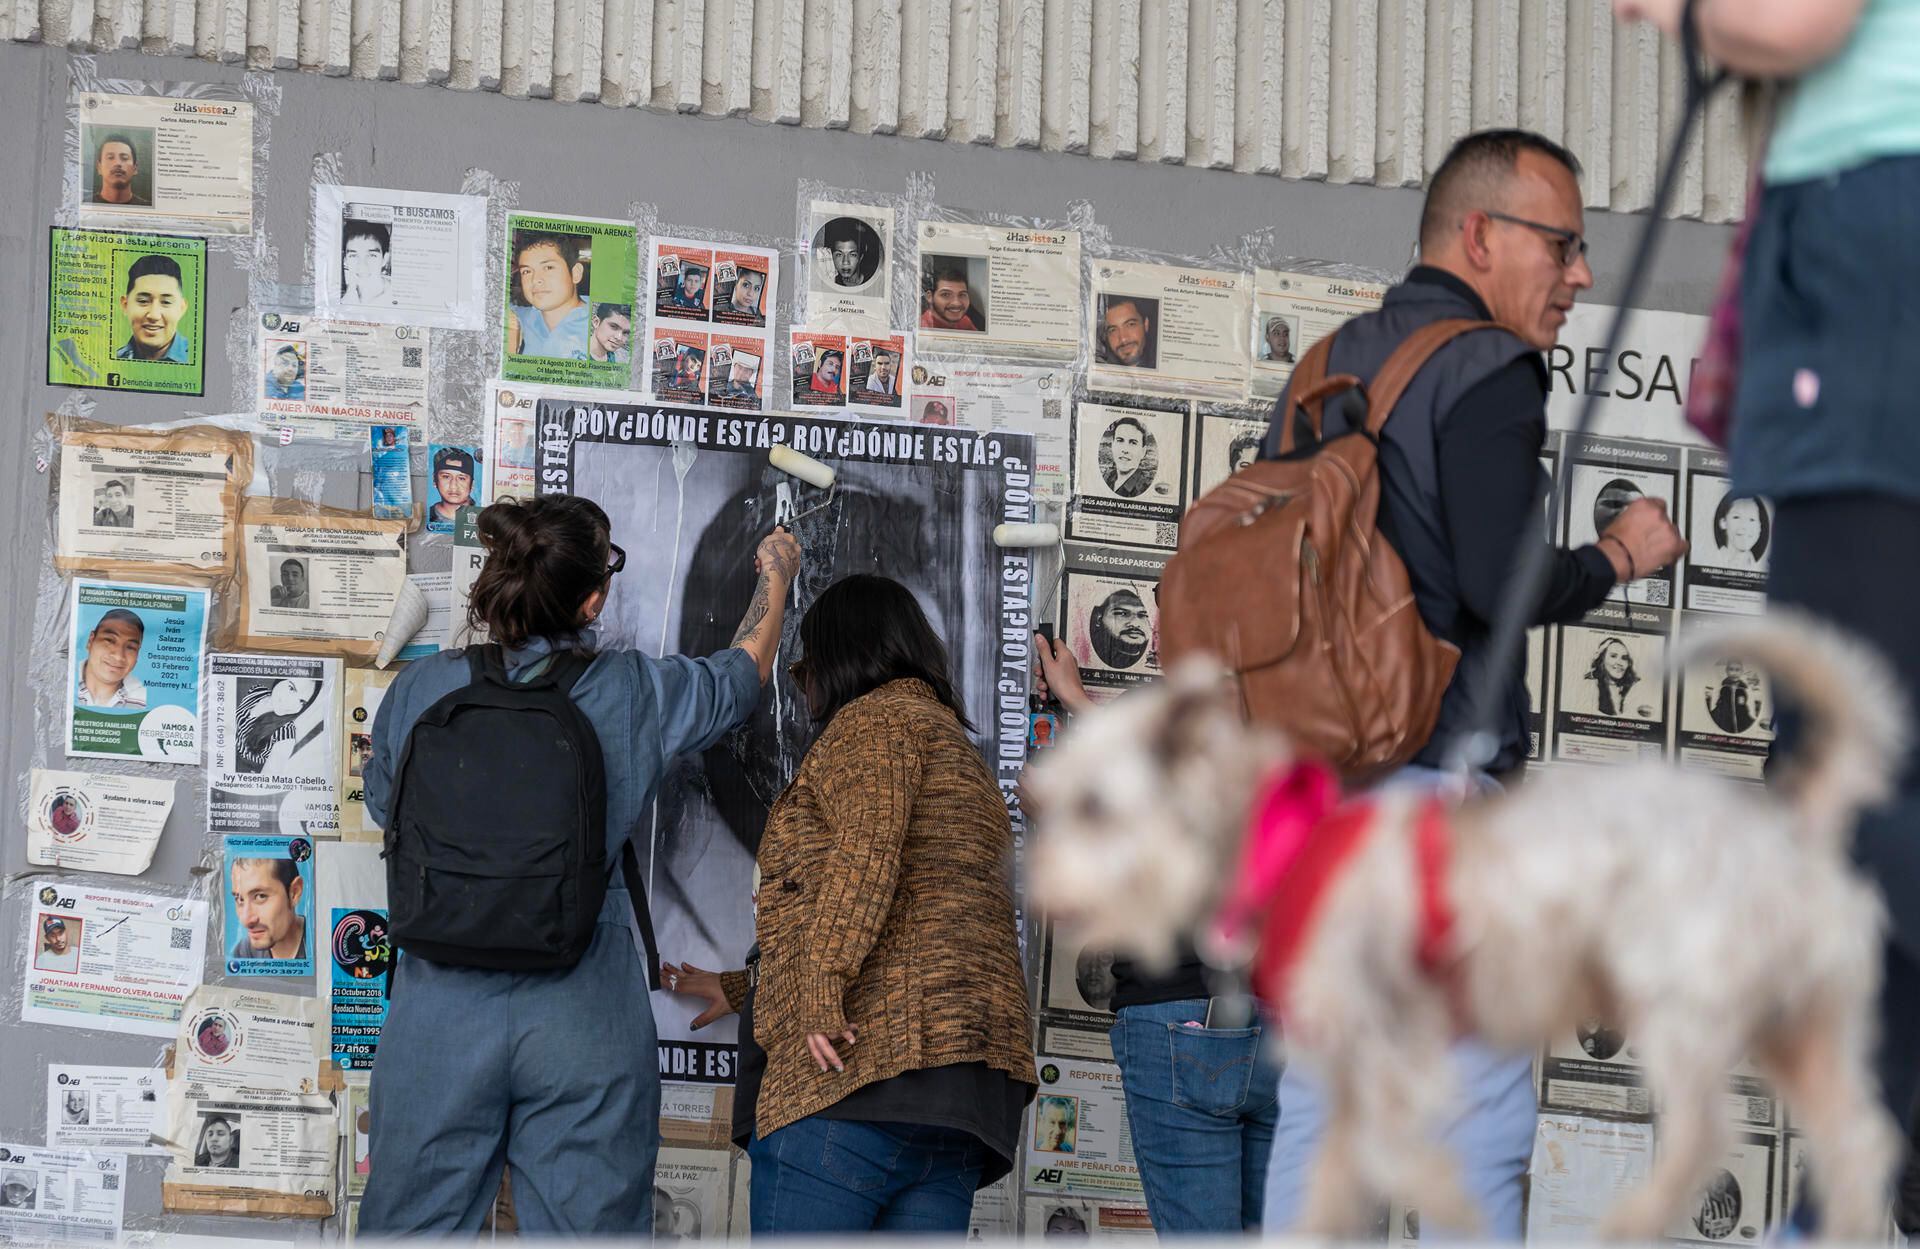 Familiares y amigos de personas desaparecidas colocan hoy carteles y placas por la memoria de las víctimas de desaparición forzada, frente a la sede de la Fiscalía General del Justicia del Estado de Nuevo León (México). EFE/Miguel Sierra
